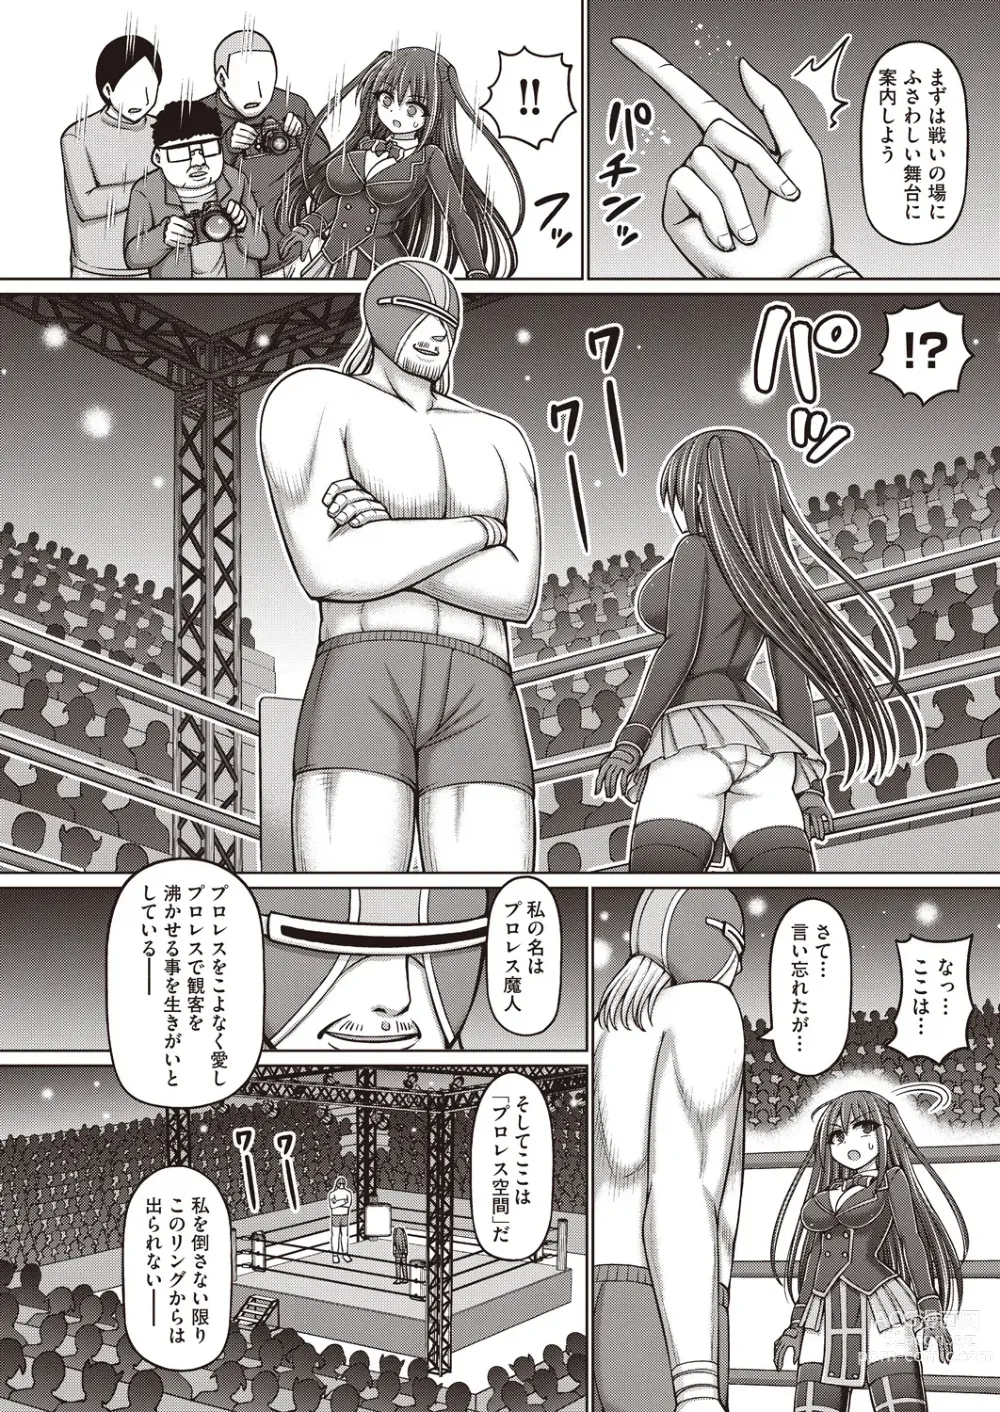 Page 6 of manga Majuu Seijo Yui vs Puroresu Majin Zenpen